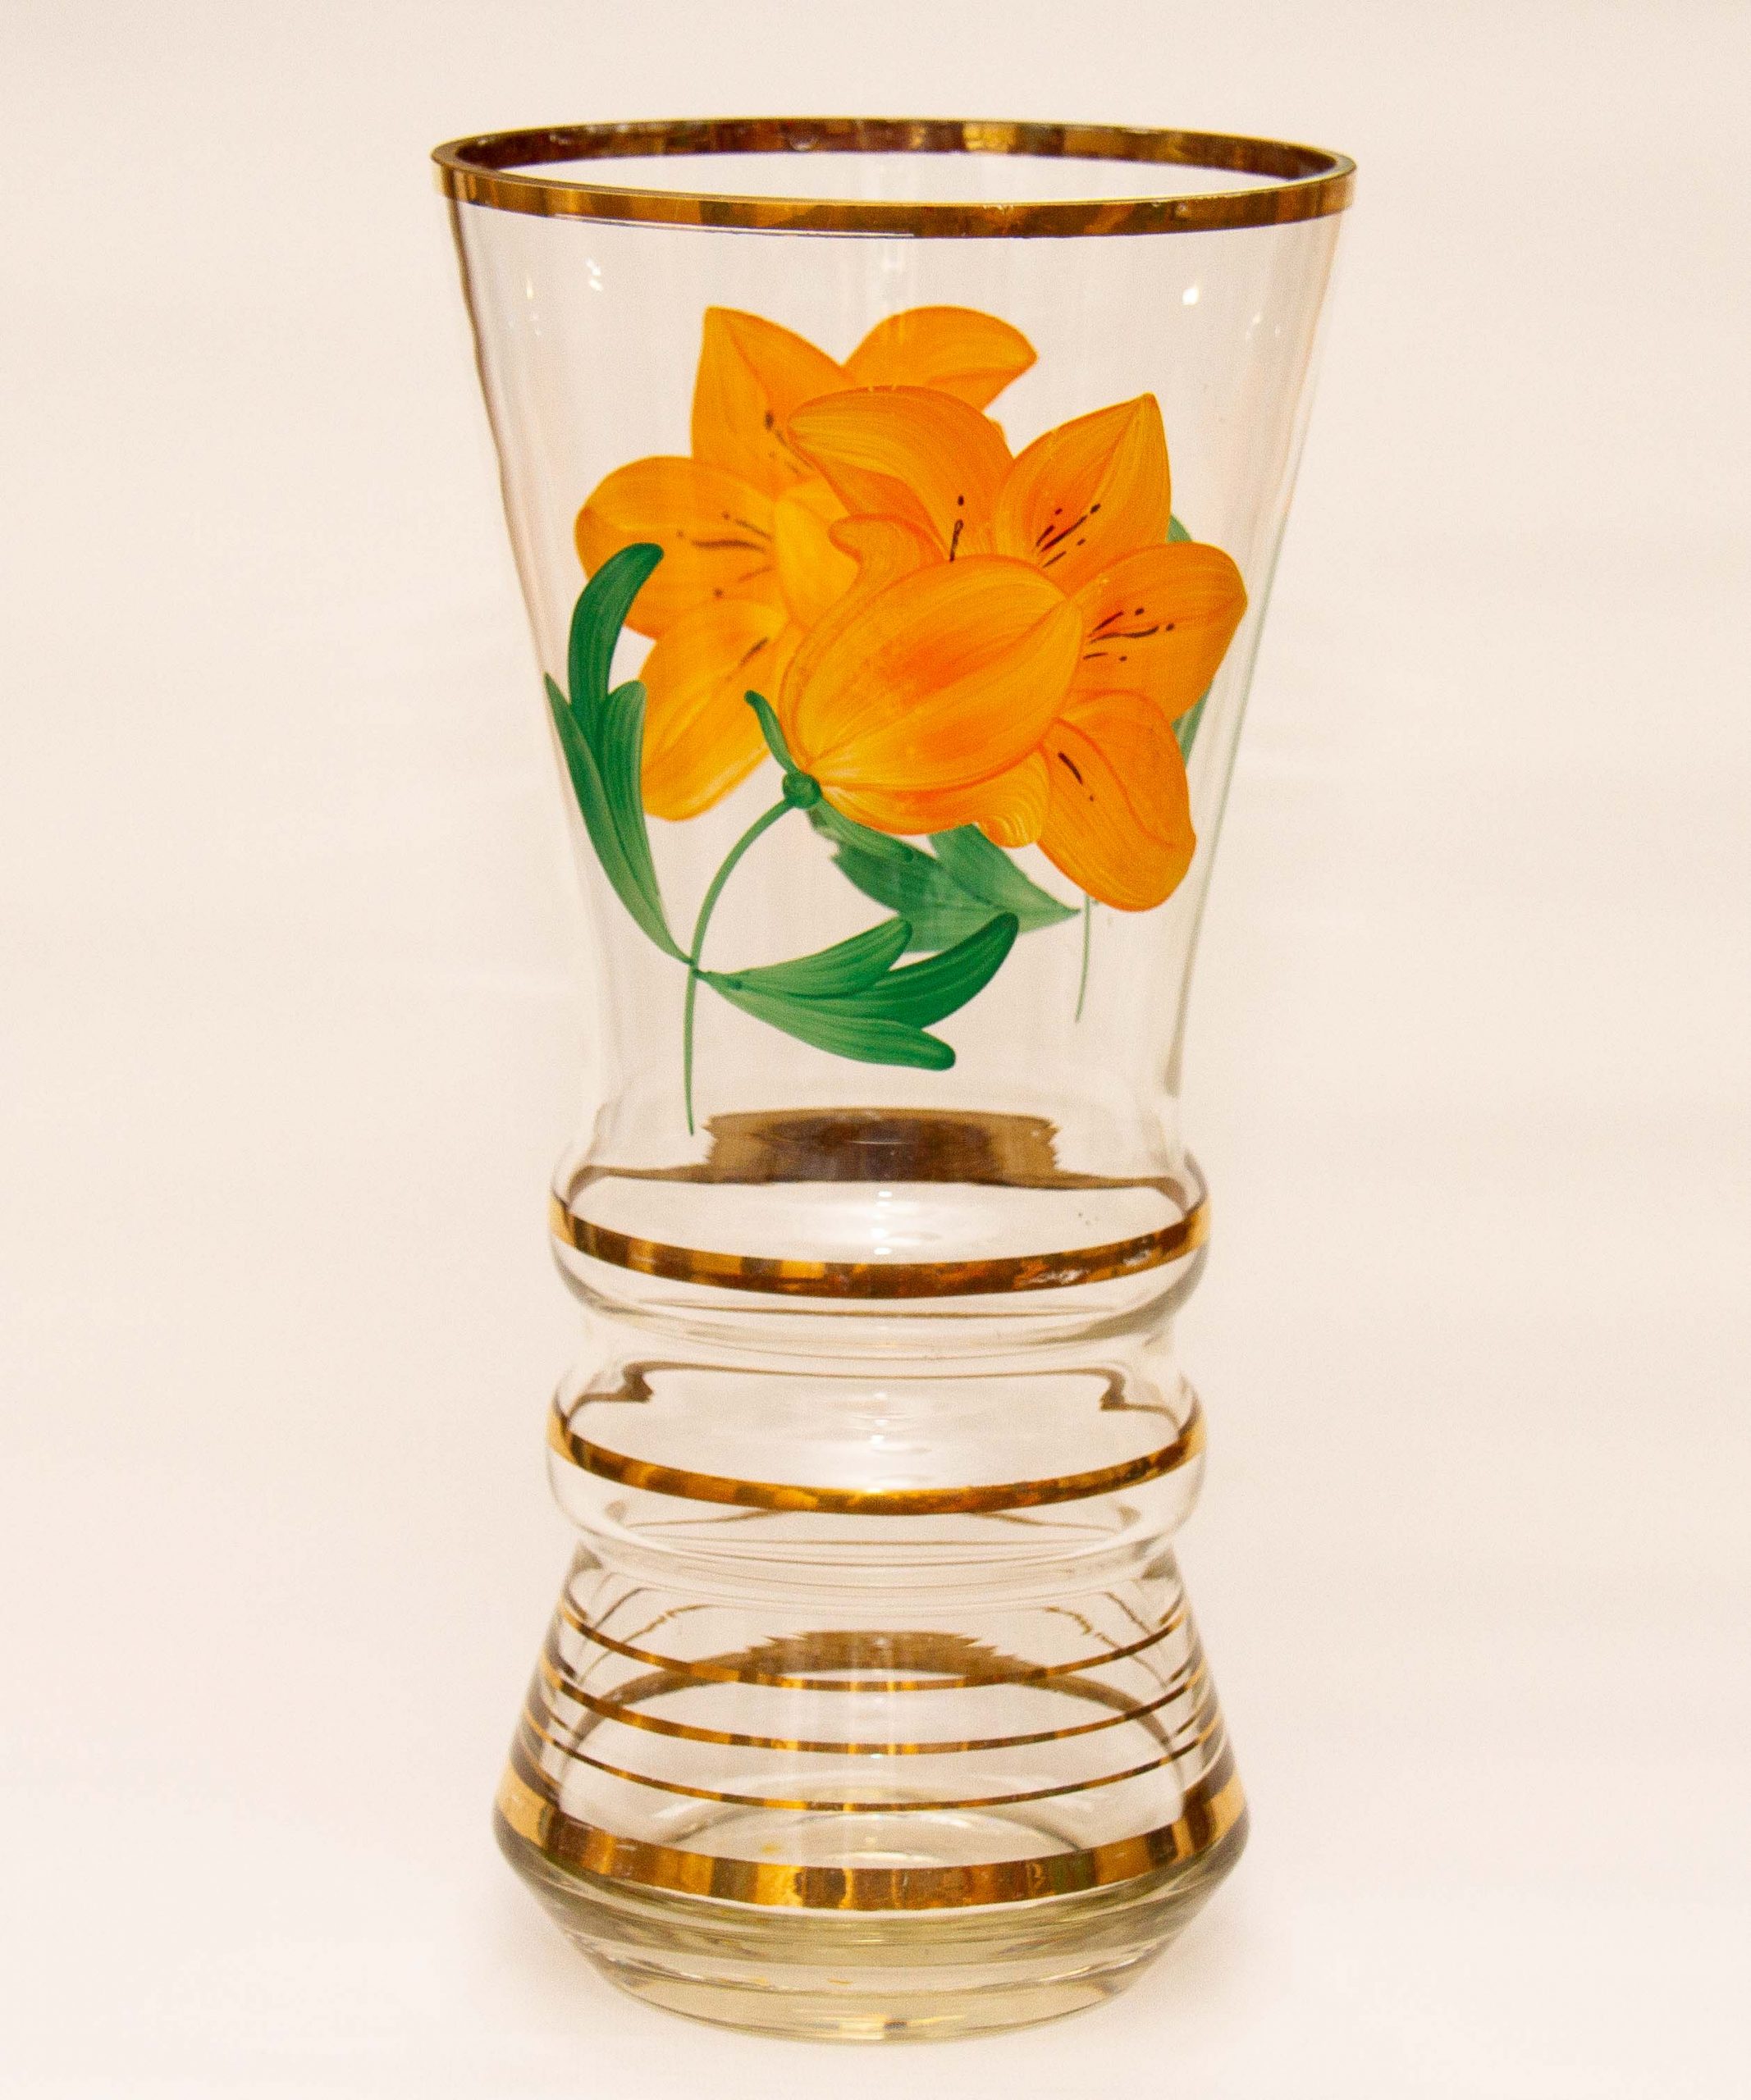 Large Vintage Glass Vase Orange Painted Flower Pattern Gold Bands And Rim Love Vintage